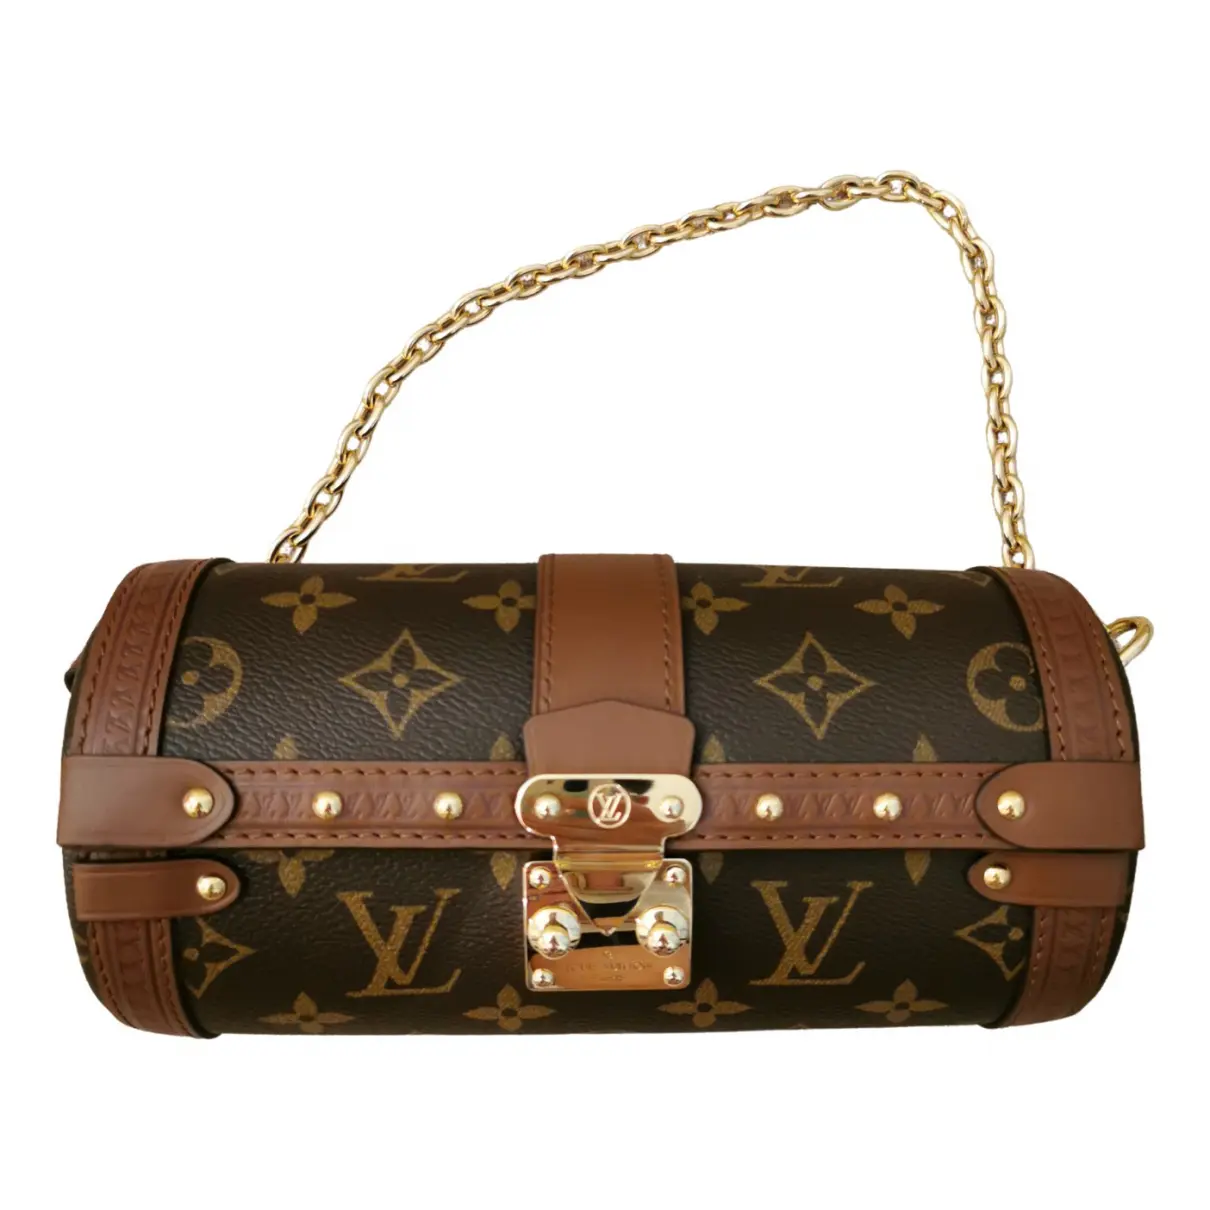 Papillon Trunk cloth handbag Louis Vuitton